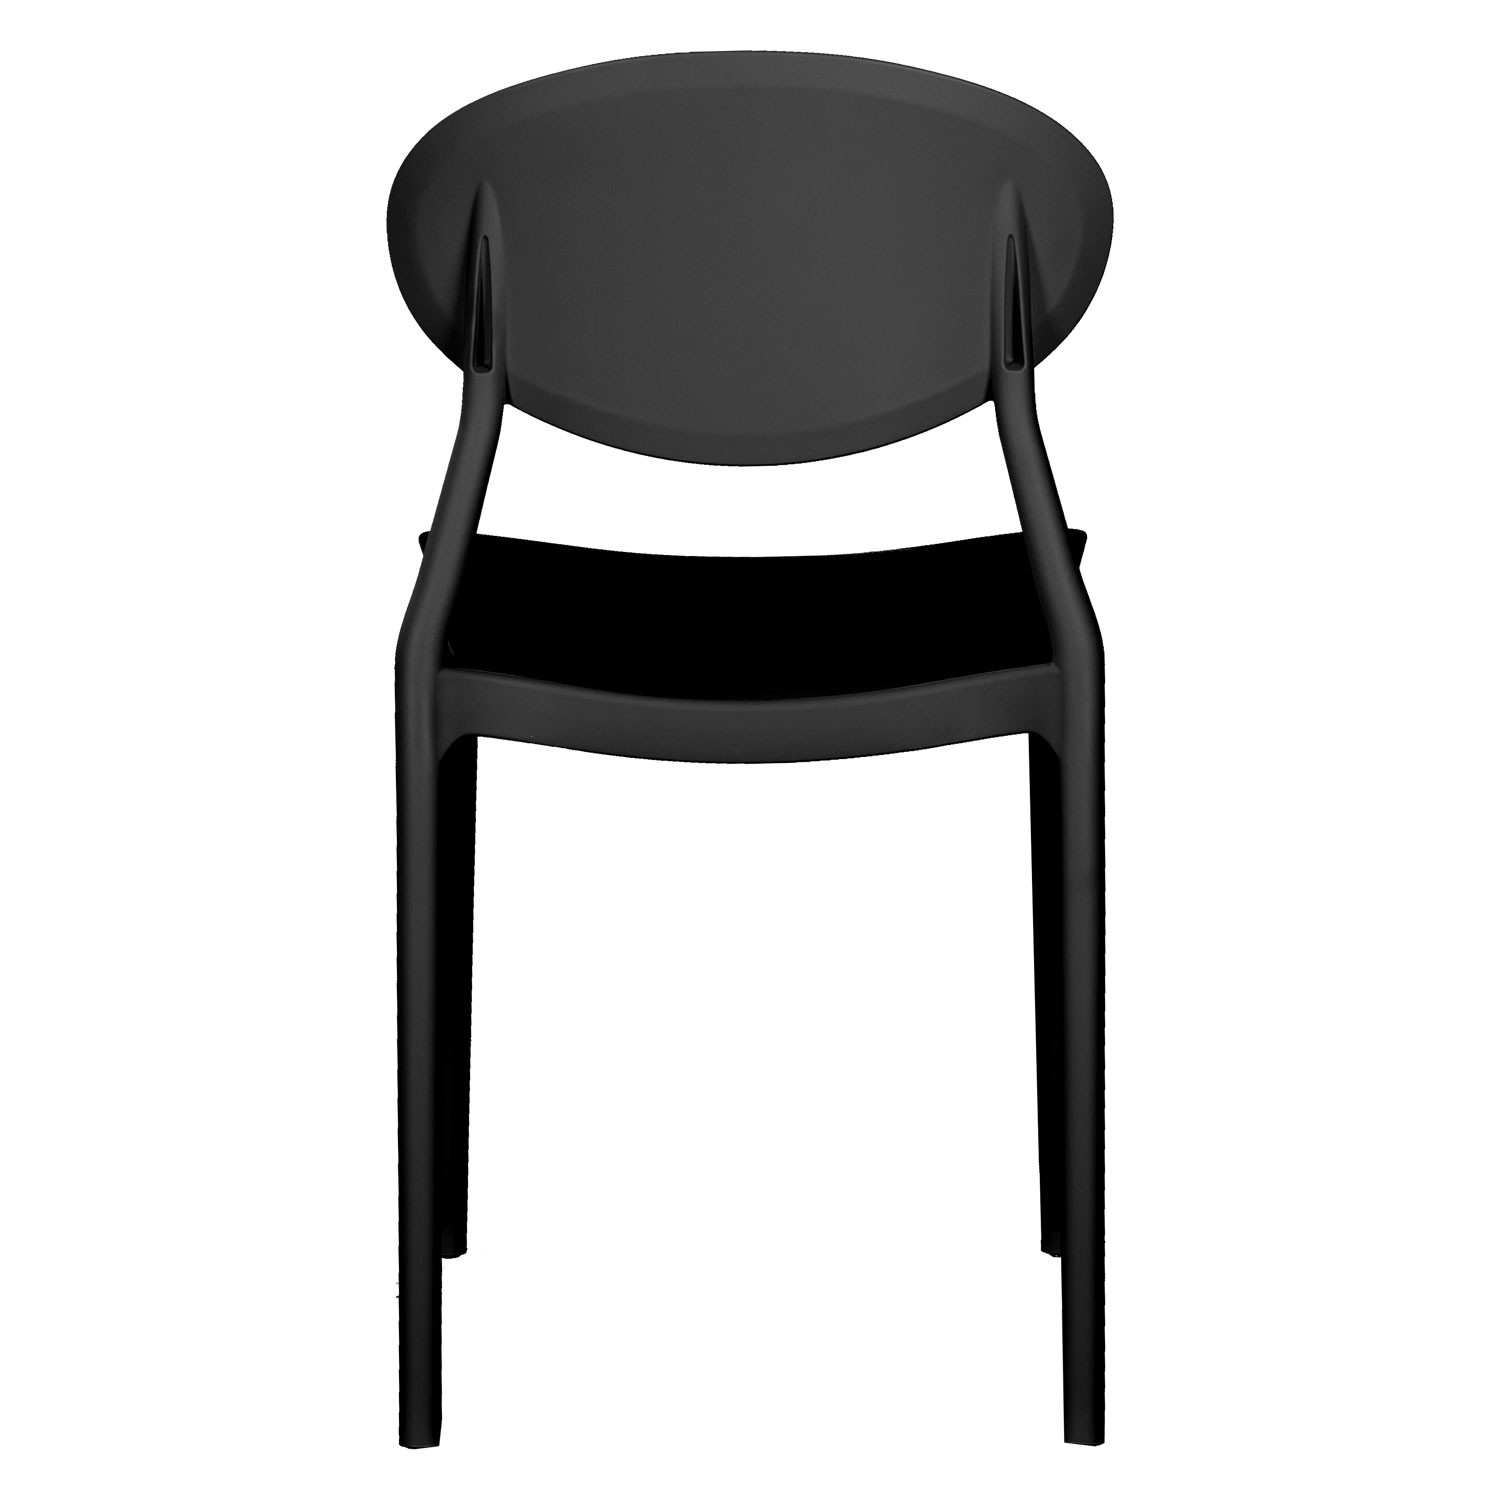 Chaise de jardin Lot de 4 Noir Chaises design moderne Plastique Chaises exterieur Chaises empilable Chaise de cuisine